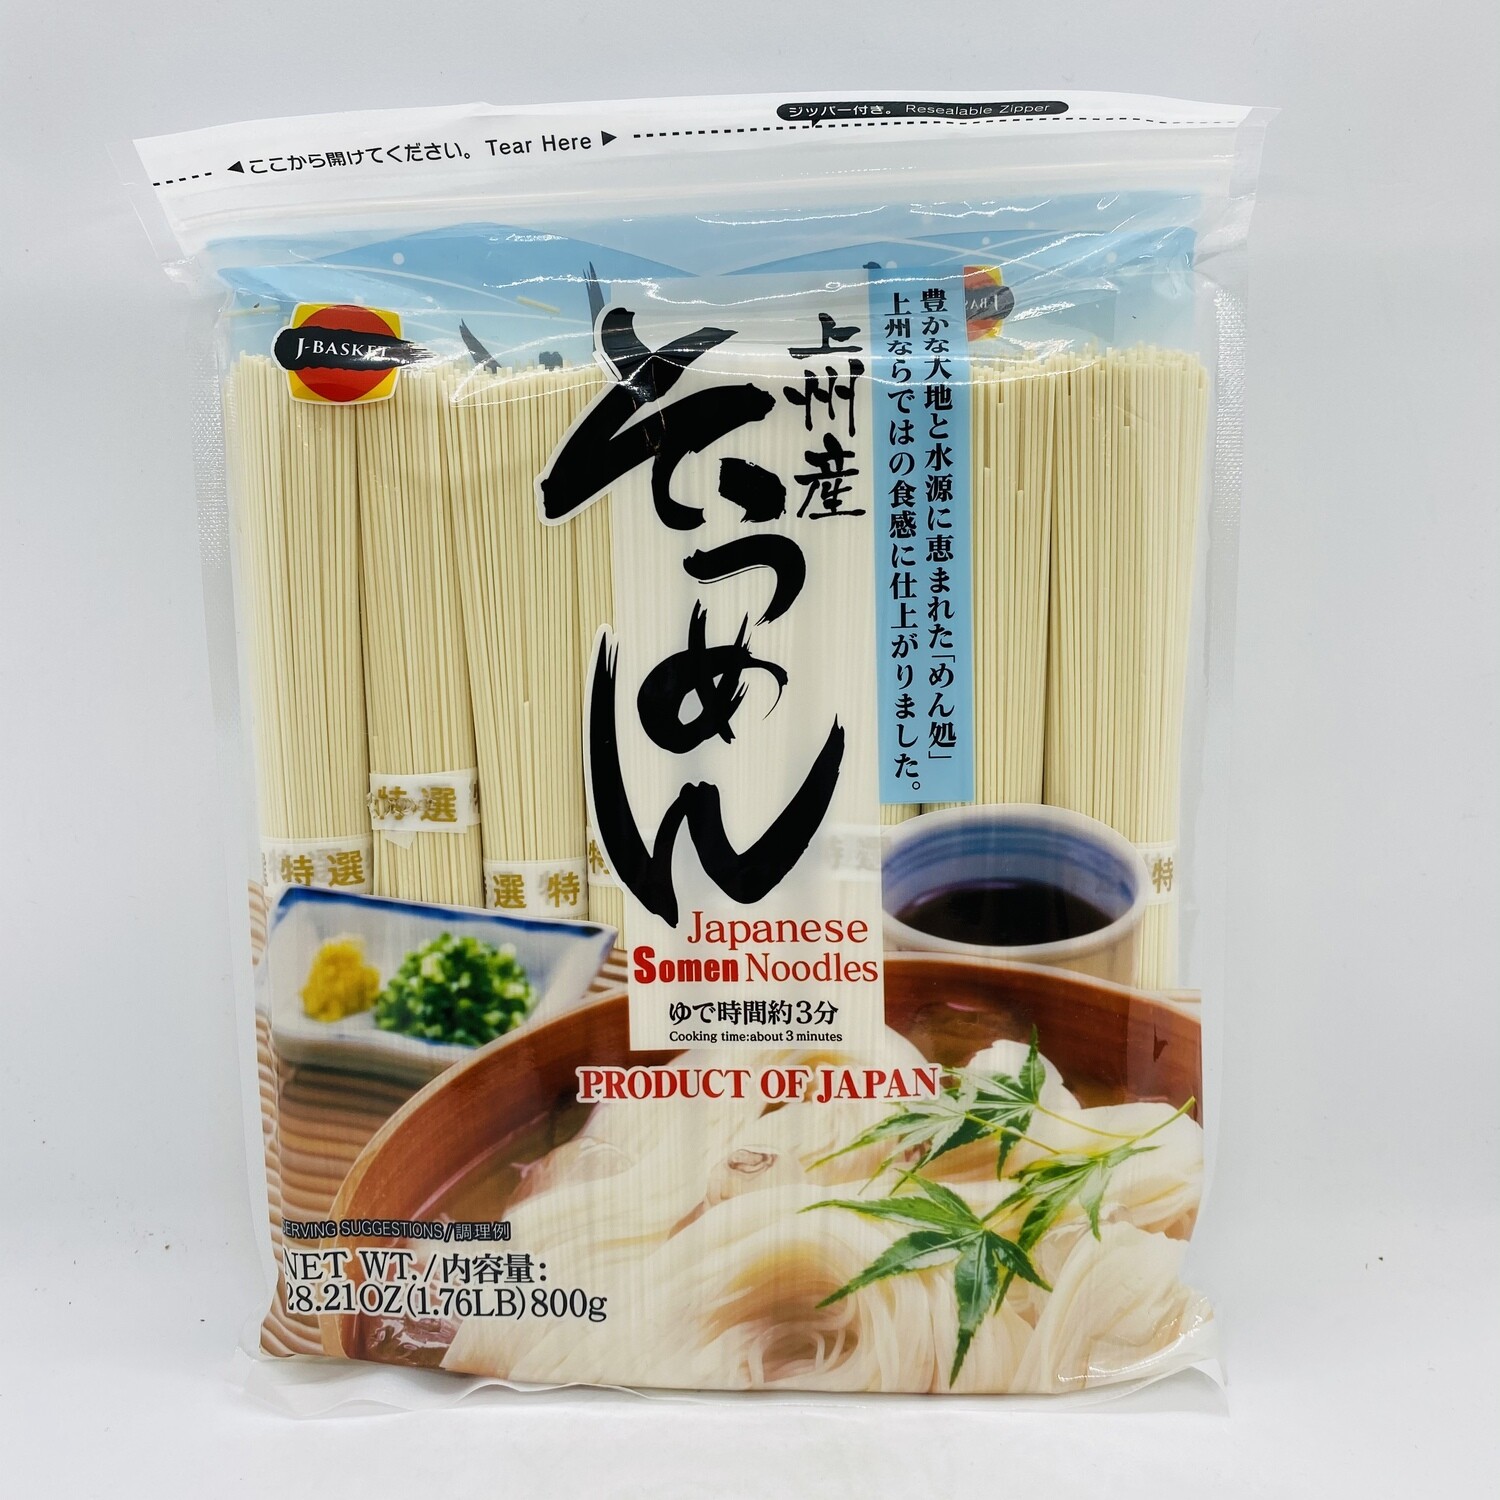 JBASKET Japanese Somen Noodle